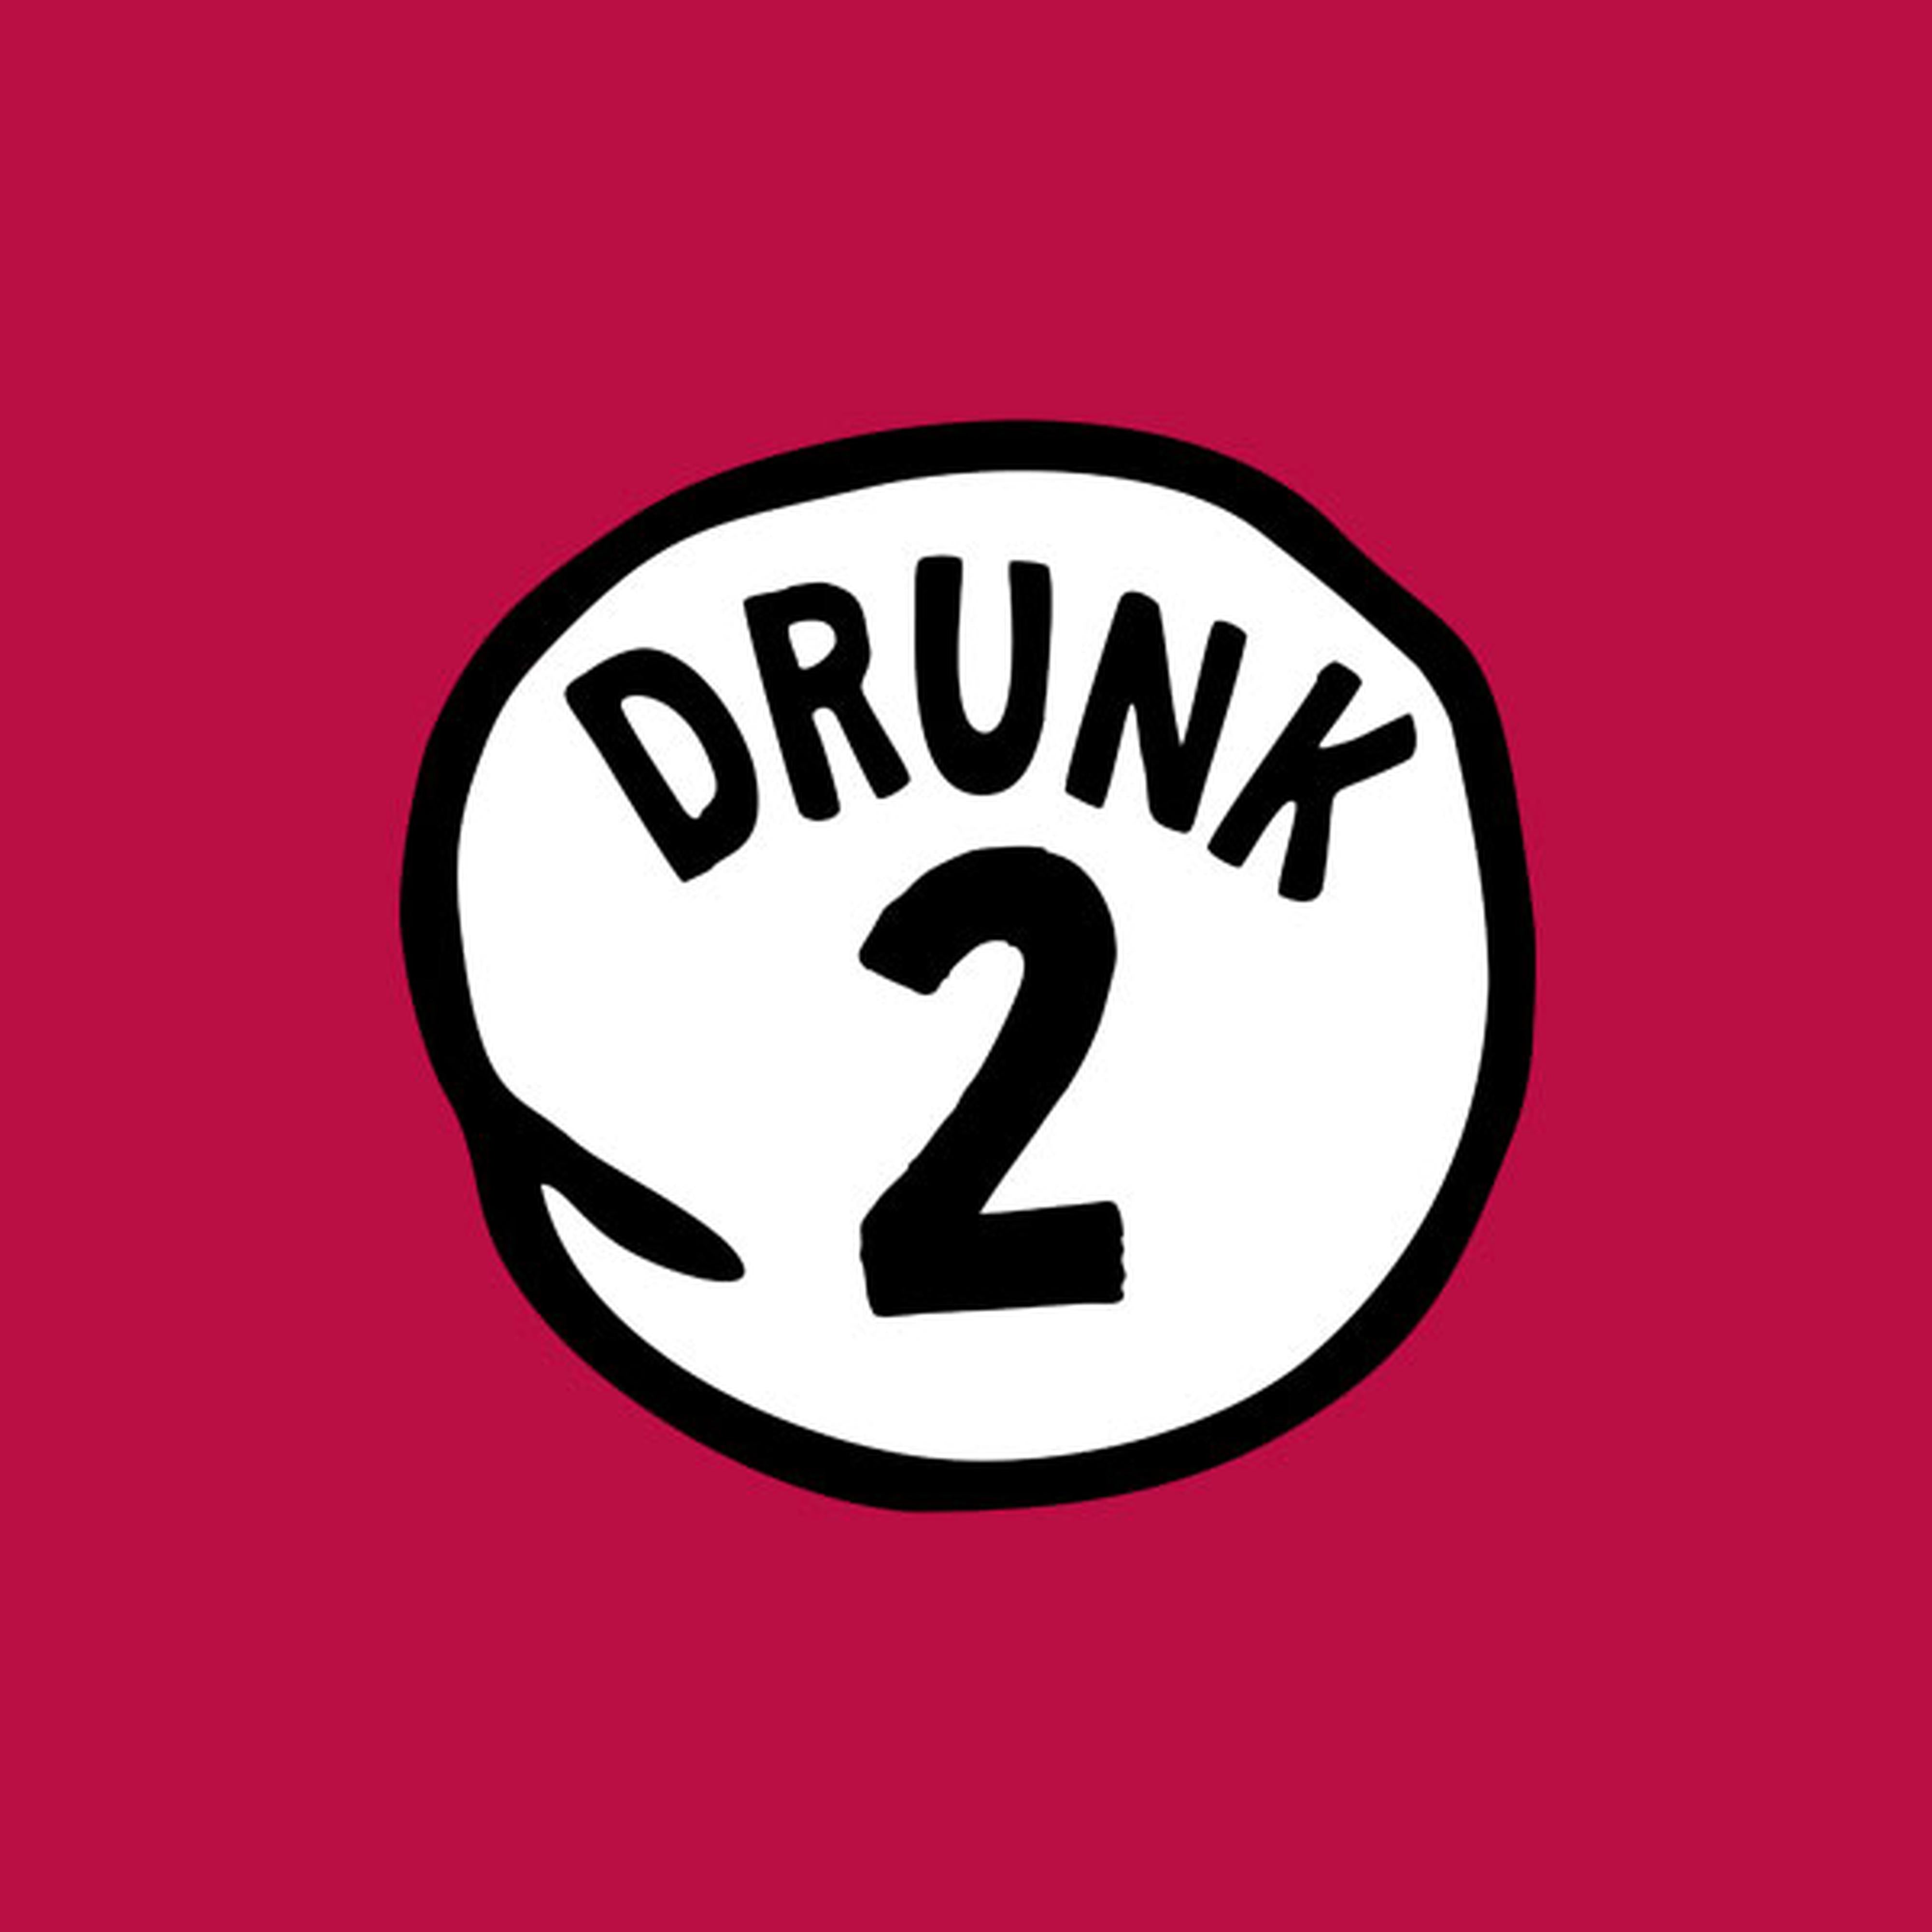 Drunk #2 - T-shirt